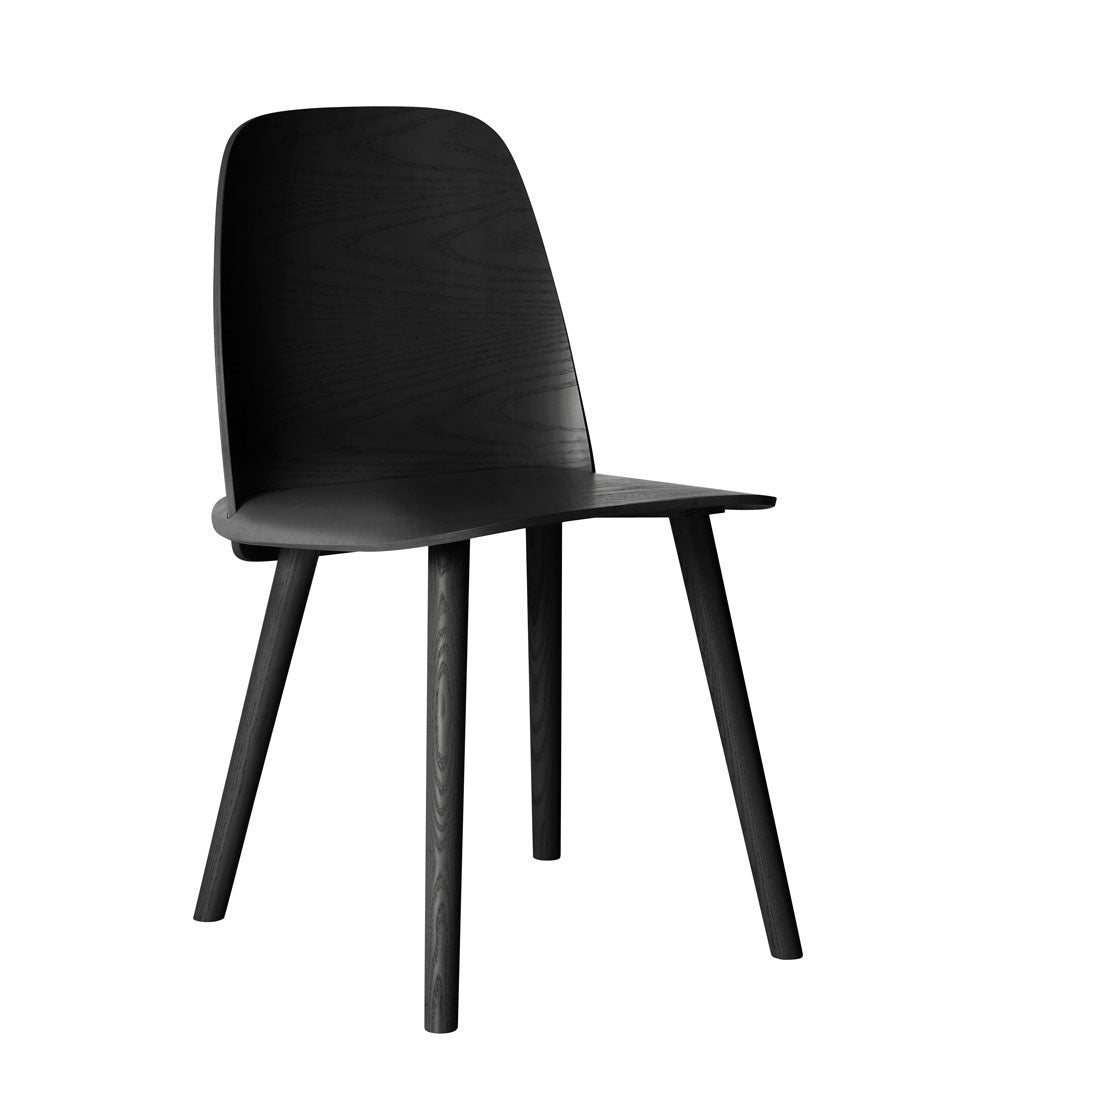 Nerd Chair by Muuto